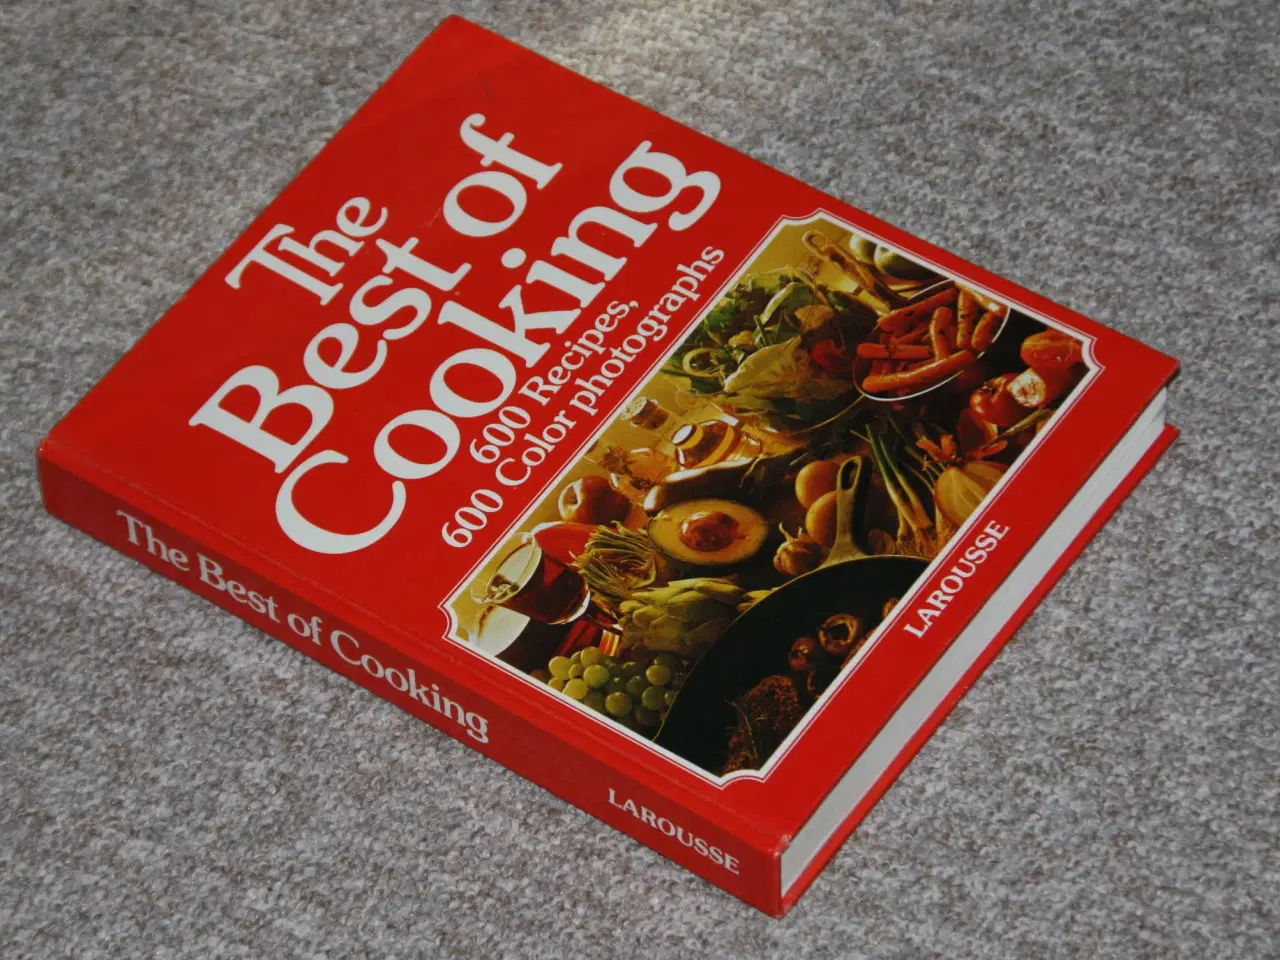 Billede 2 - Kogebogen The Best of Cooking sælges